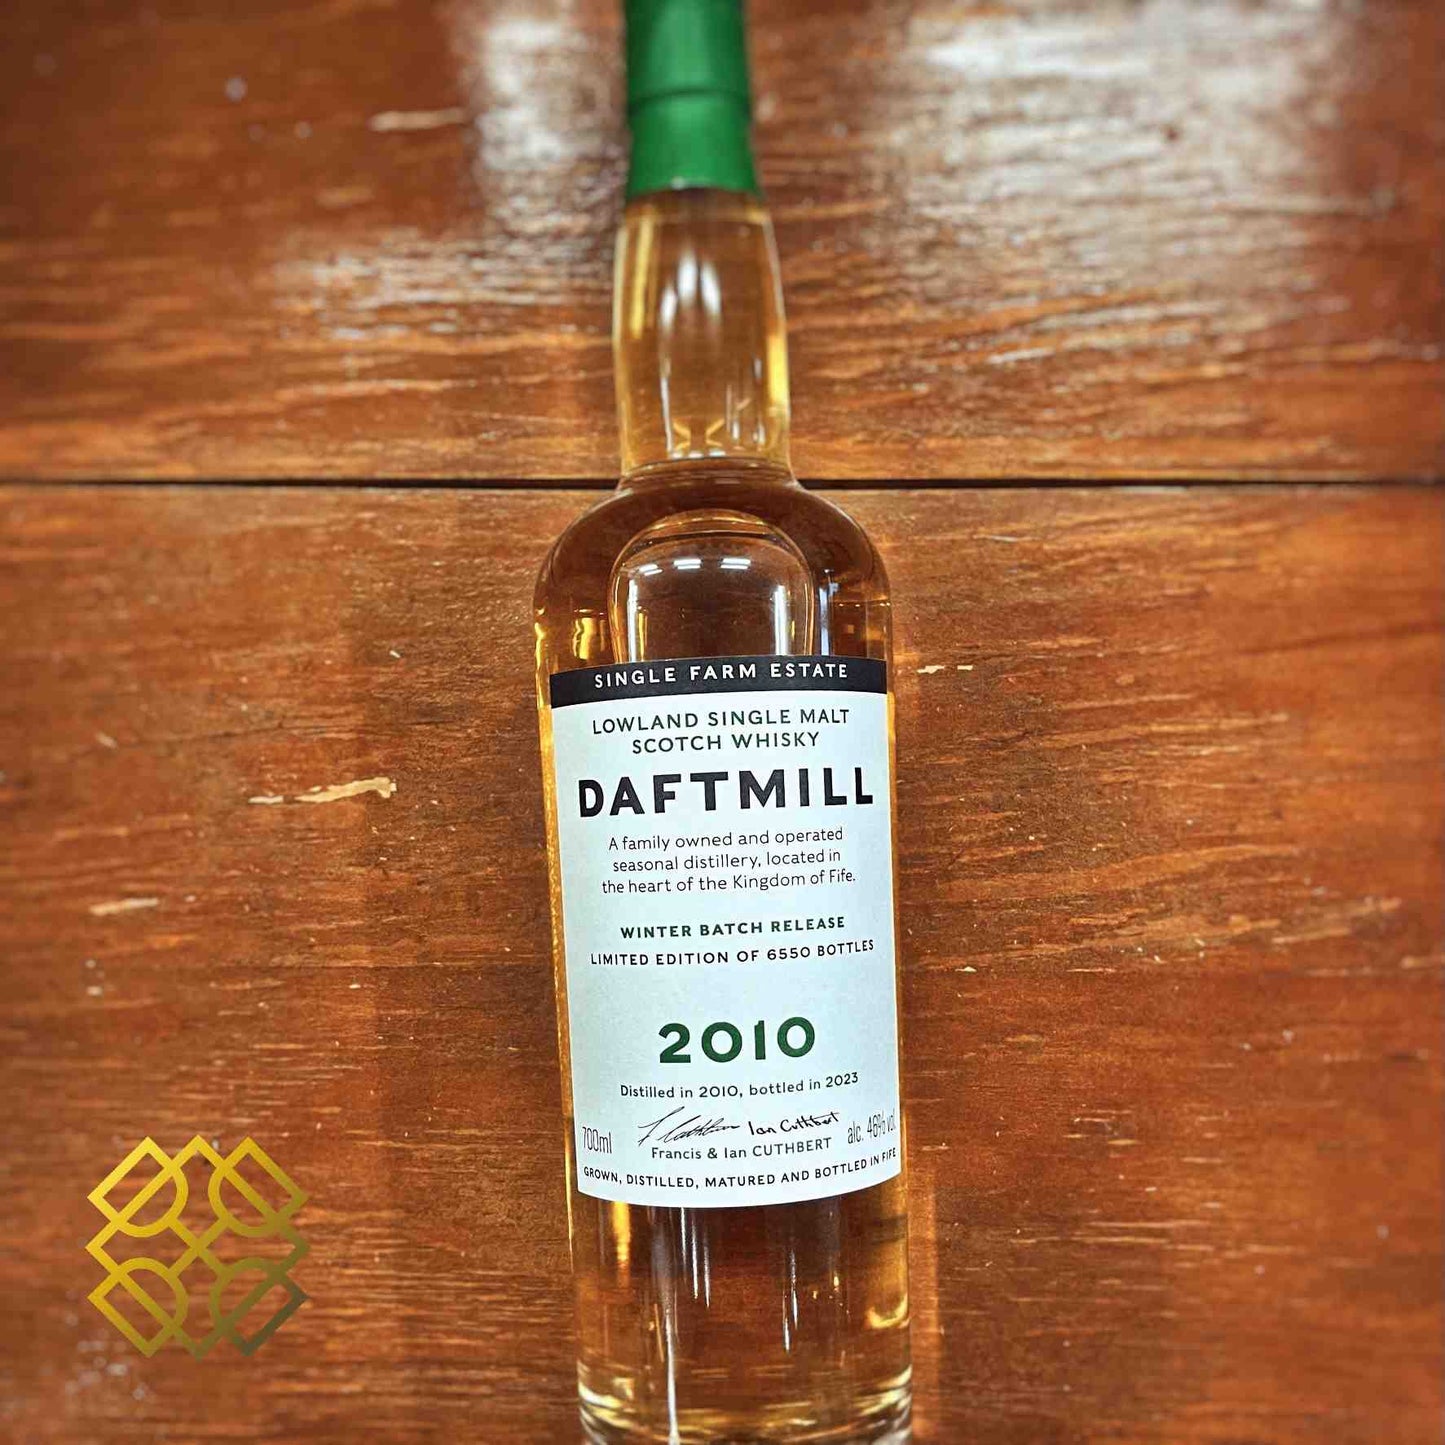 Daftmill Winter Batch Release Type : Single malt whisky